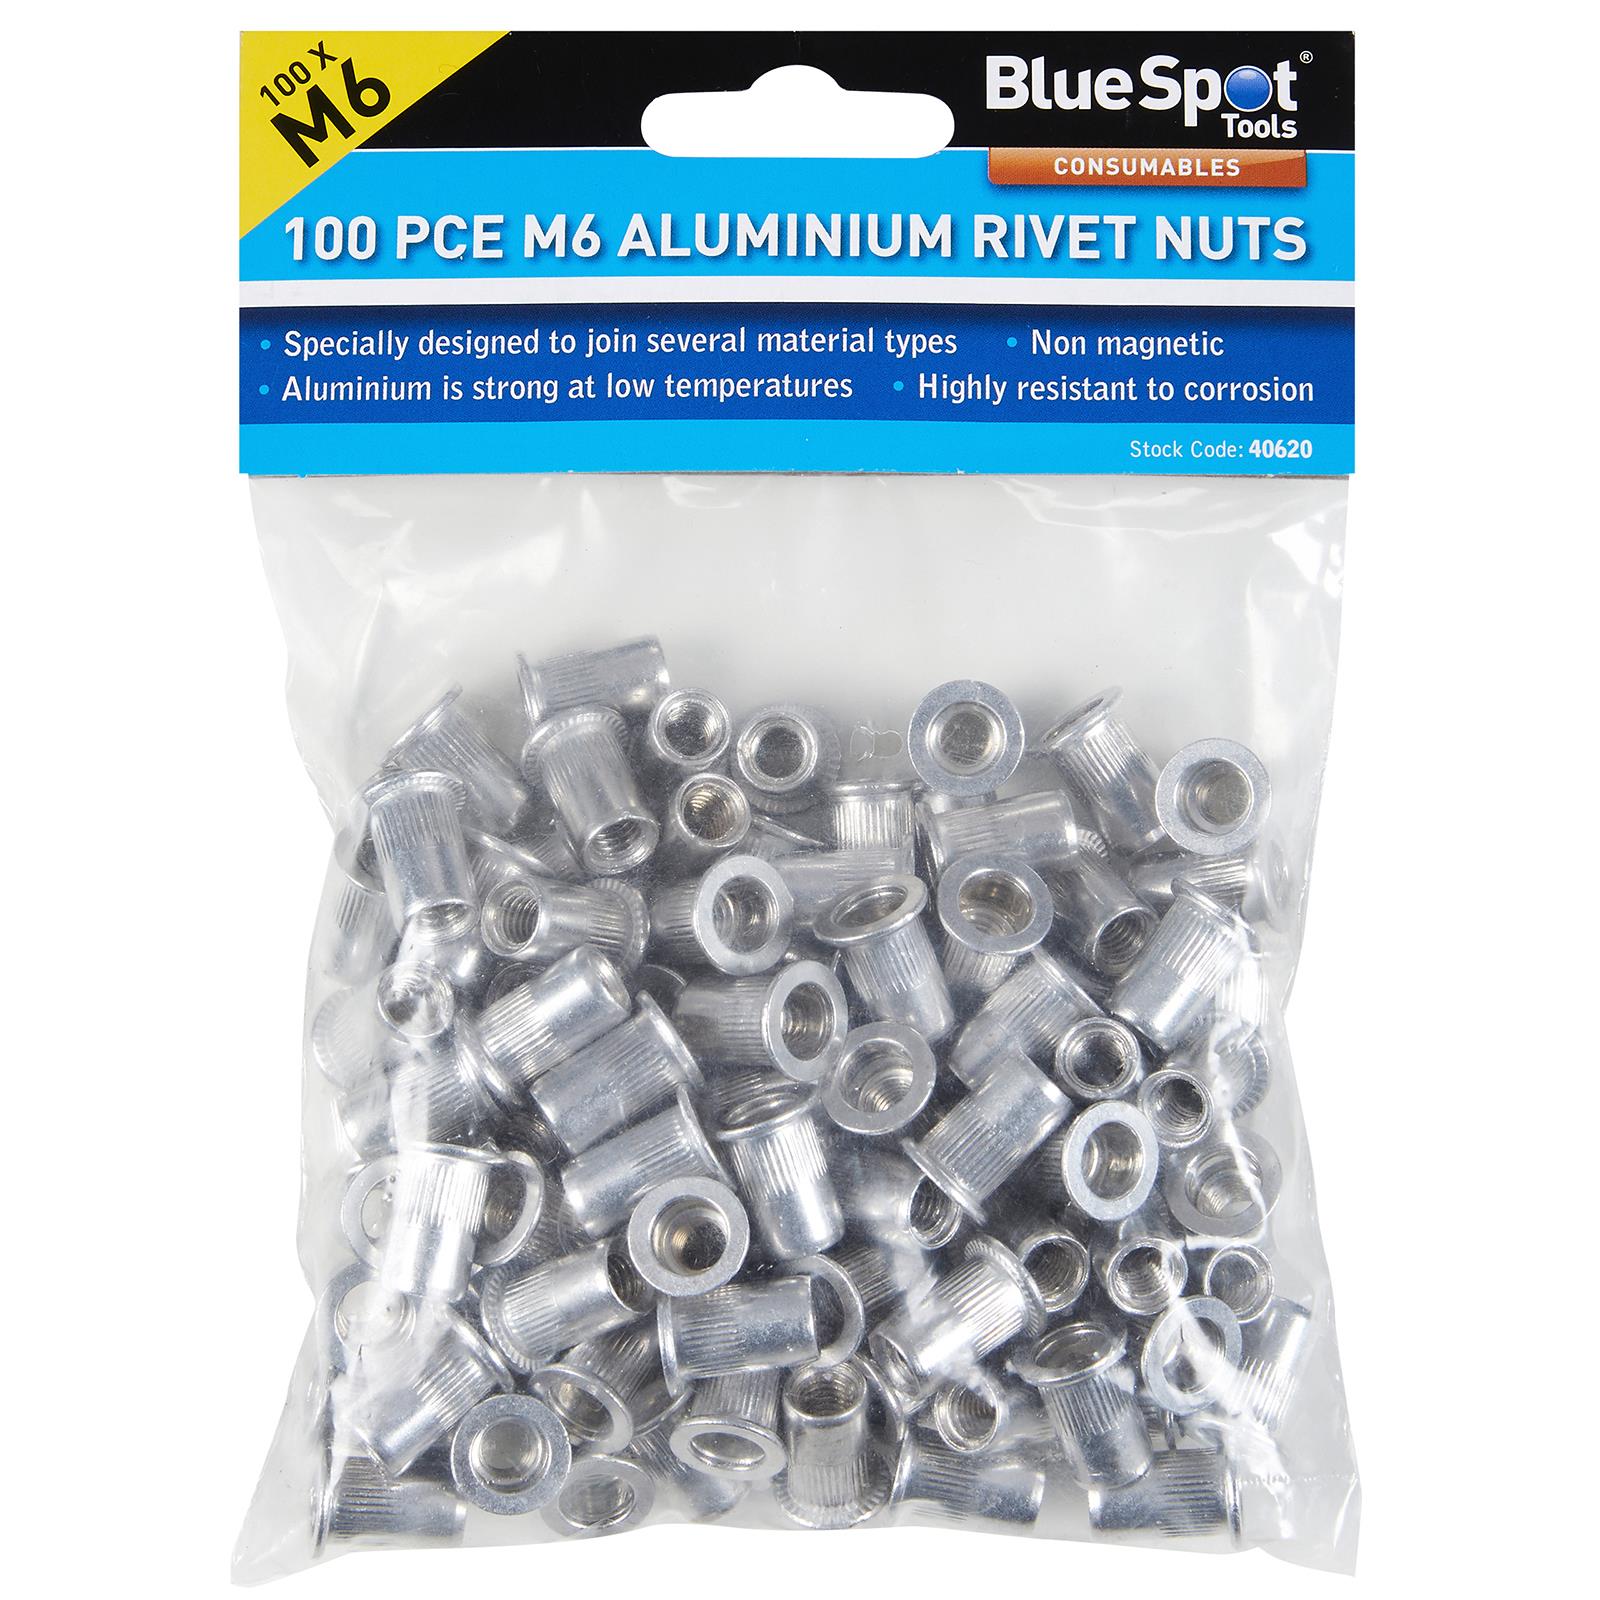 BlueSpot Aluminium Rivet Nuts M6 100 Piece Rivnuts